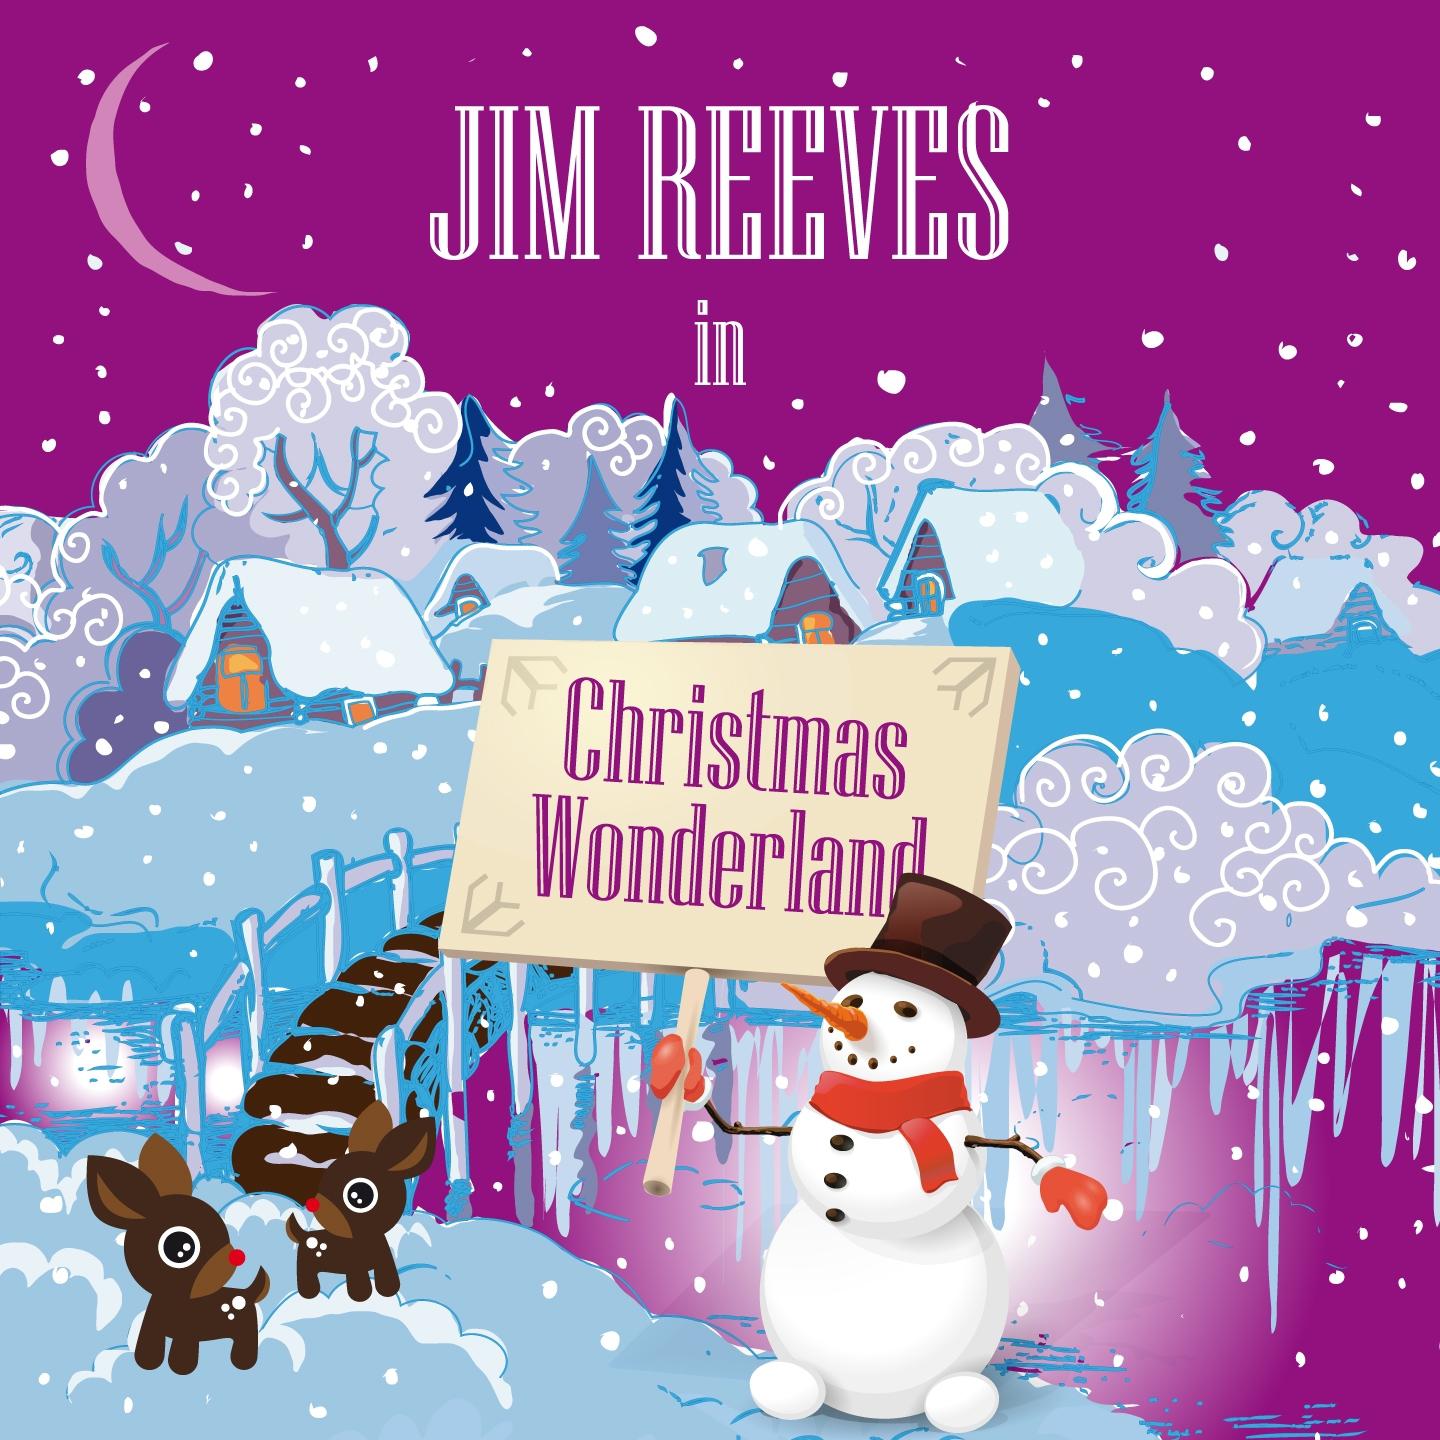 Jim Reeves in Christmas Wonderland